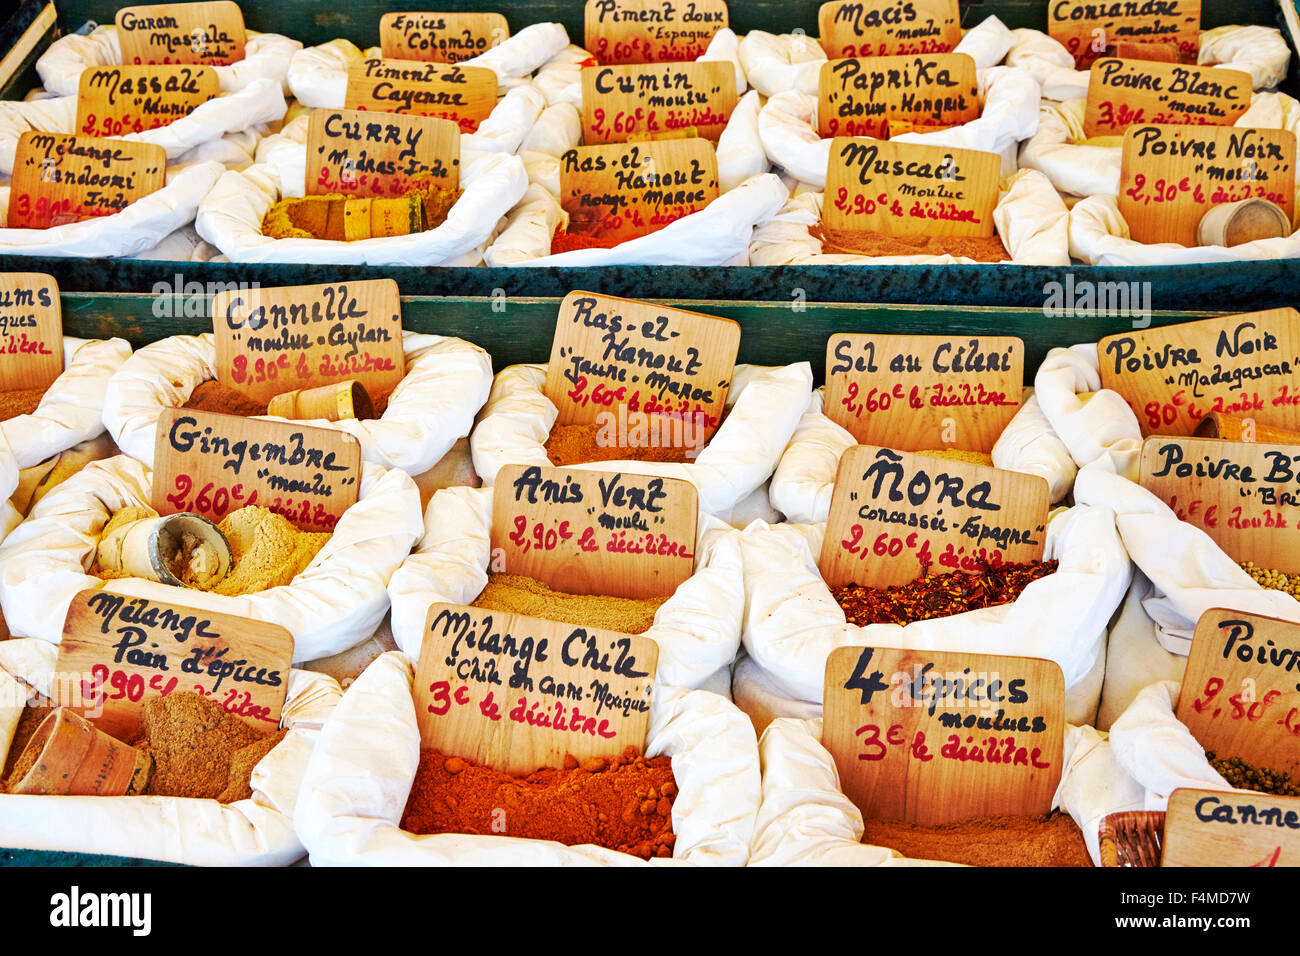 Straßenmarkt Stall Anzeige der Gewürze in Objat, Correze, Limousin, Frankreich. Stockfoto